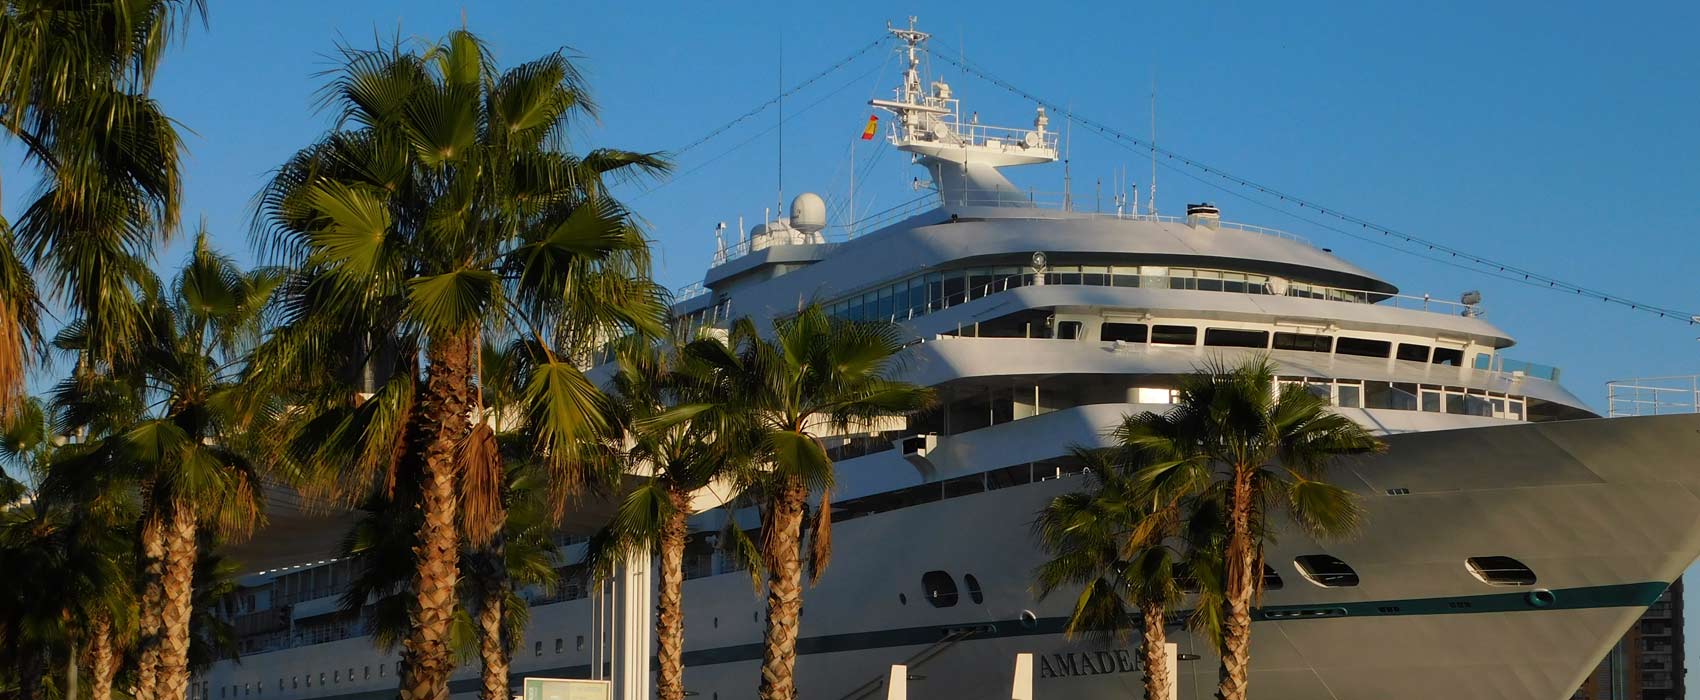 Muelle Uno - Die Hafenpromenade von Malaga